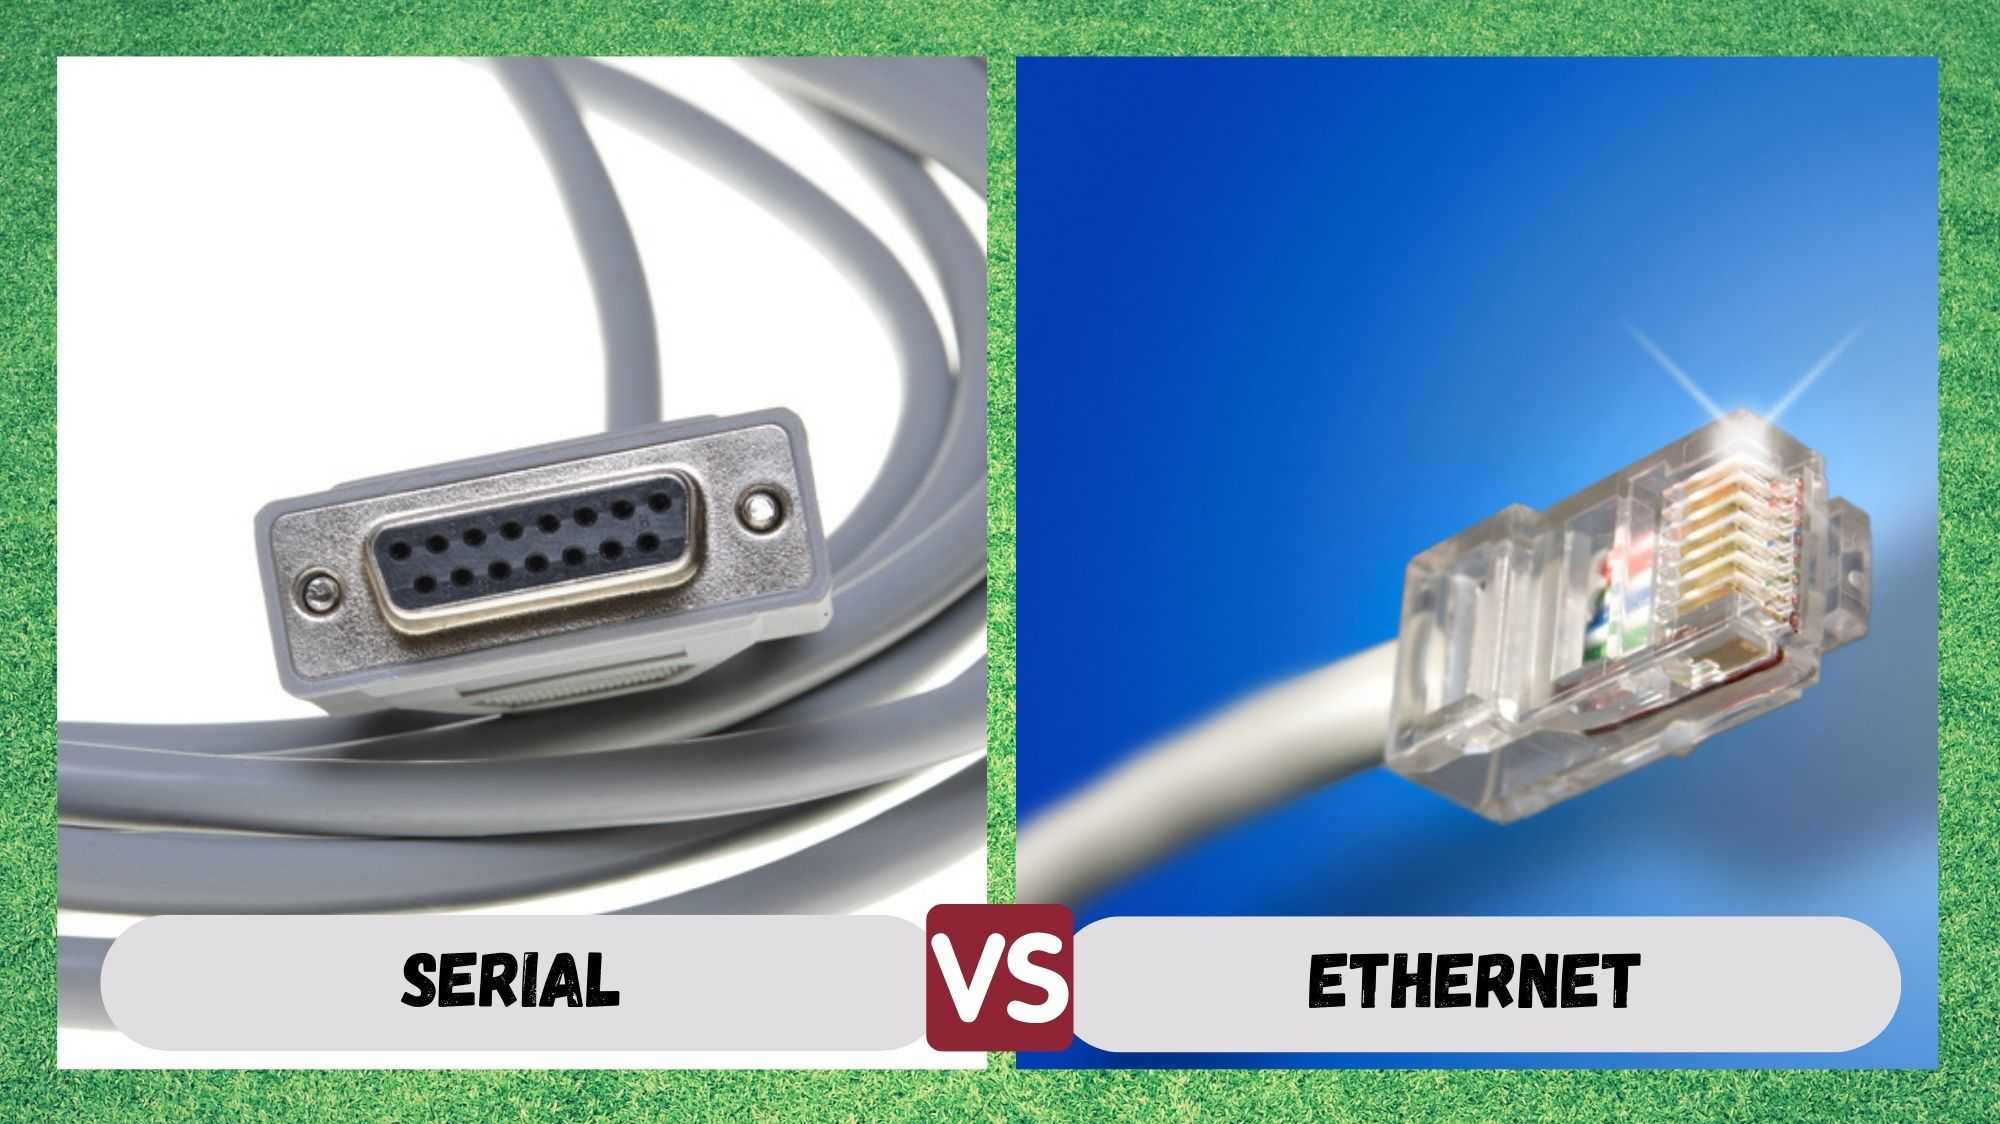 Serial vs Ethernet: waa maxay faraqa u dhexeeya?